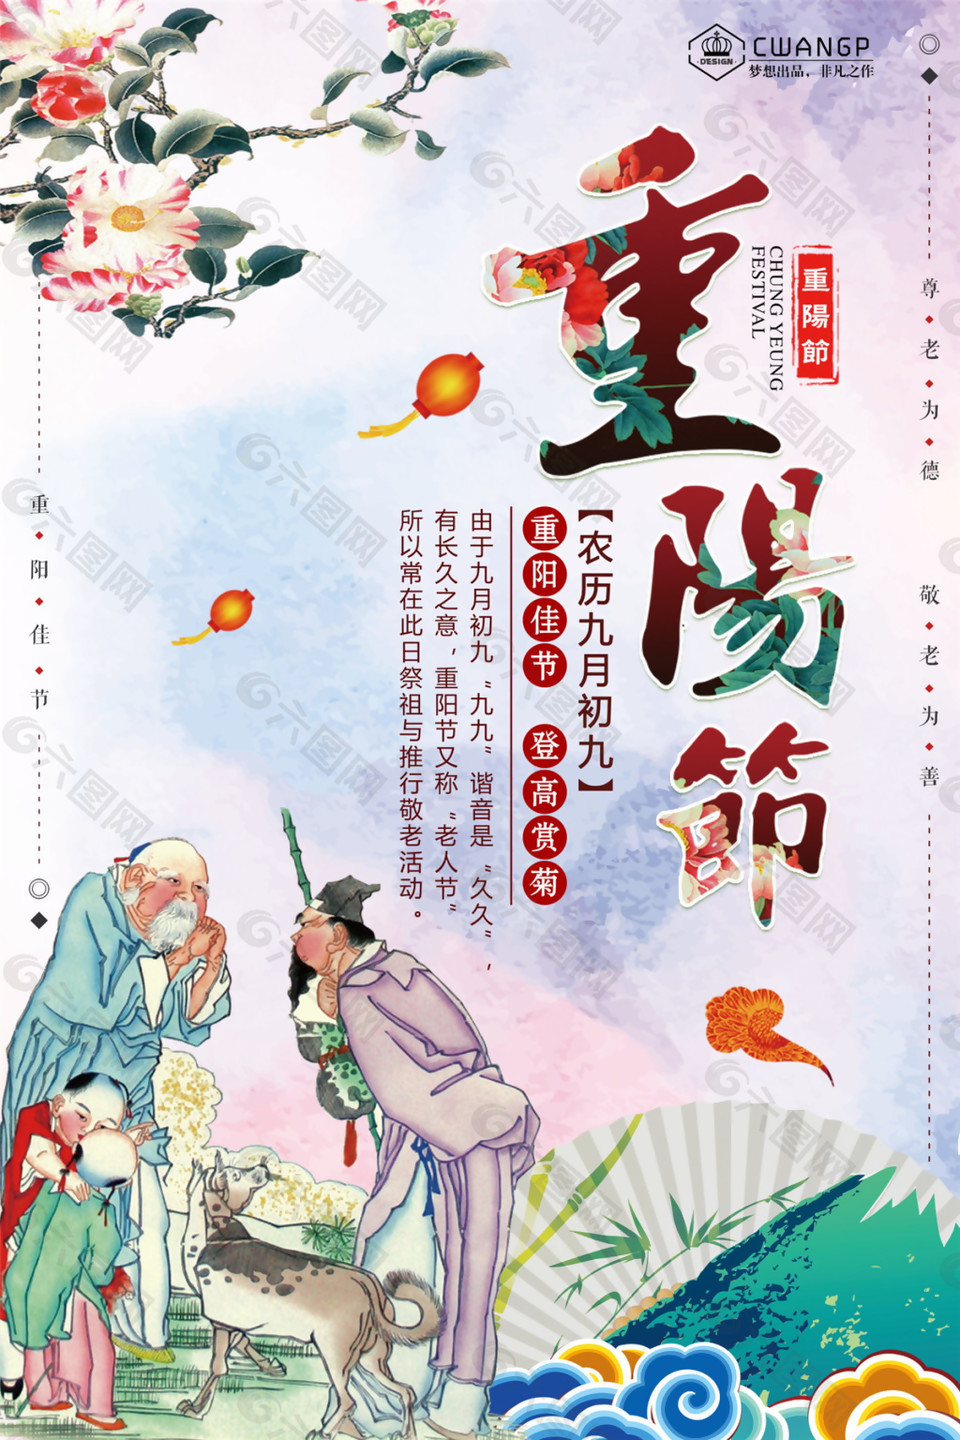 重阳节传统节日公益活动宣传广告